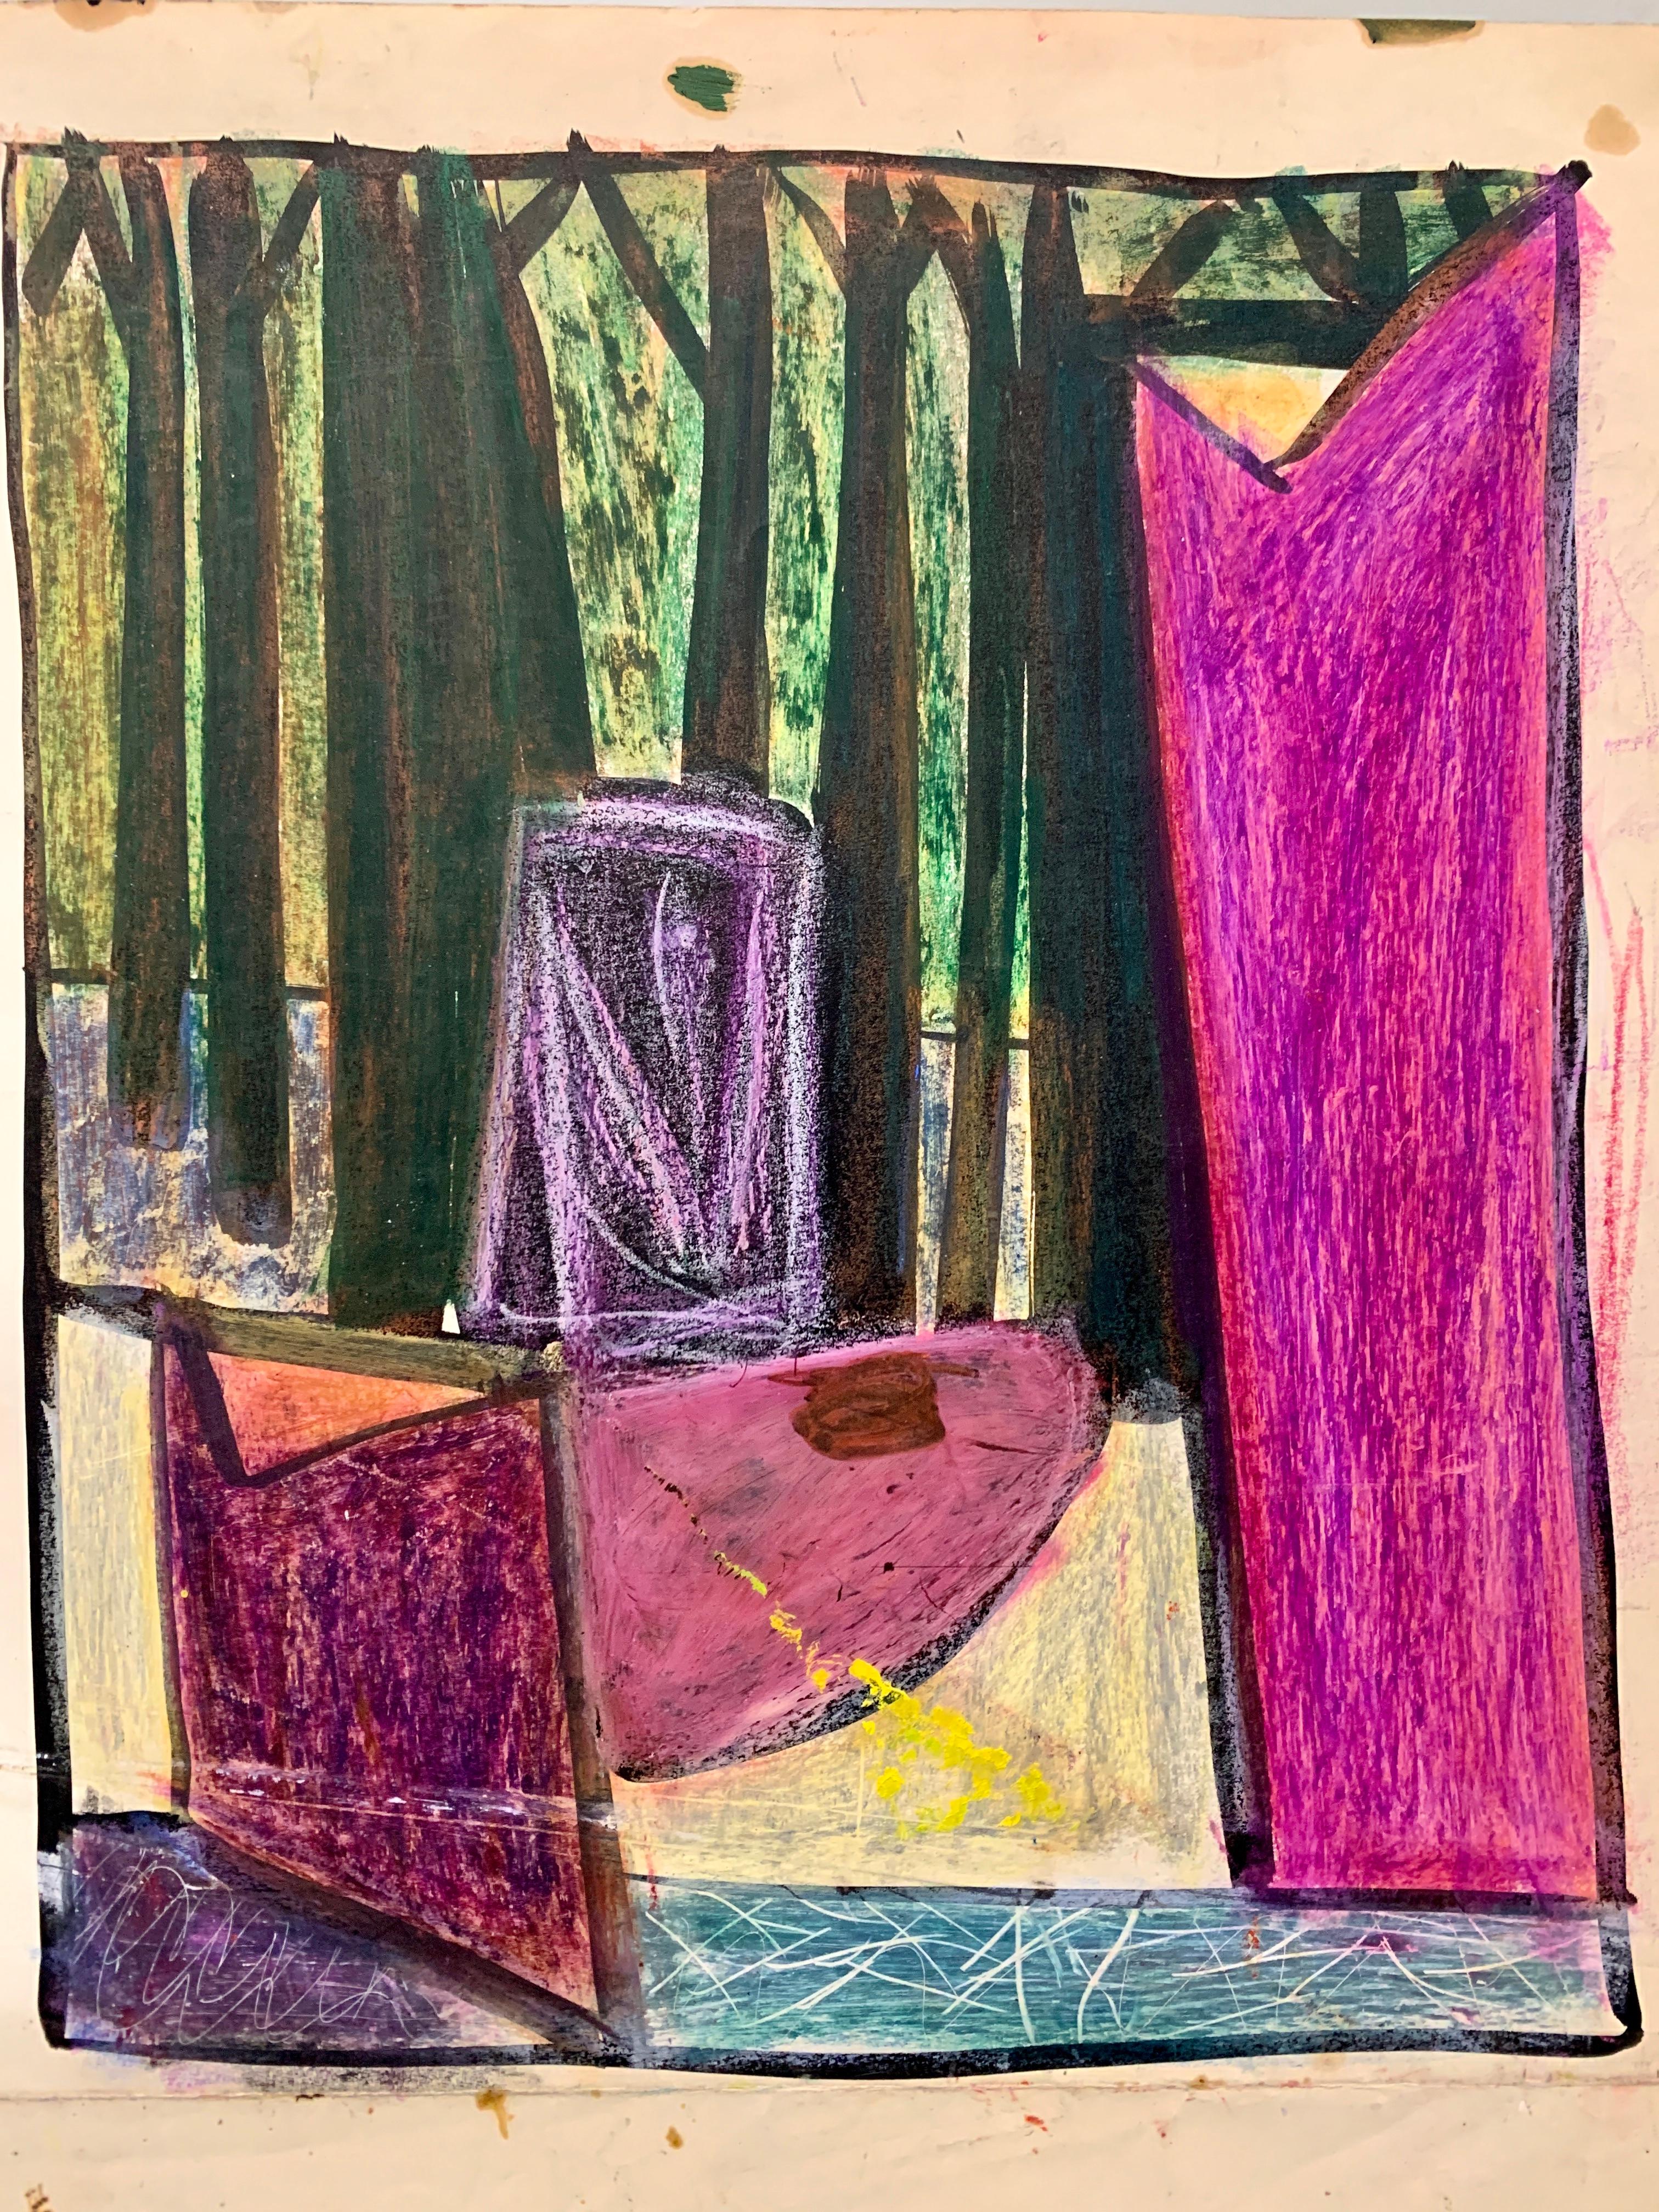 1950er Jahre „“ Wald durch Fenster“ Abstrakte Gouache Universität von Paris, 1950er Jahre – Painting von Donald Stacy